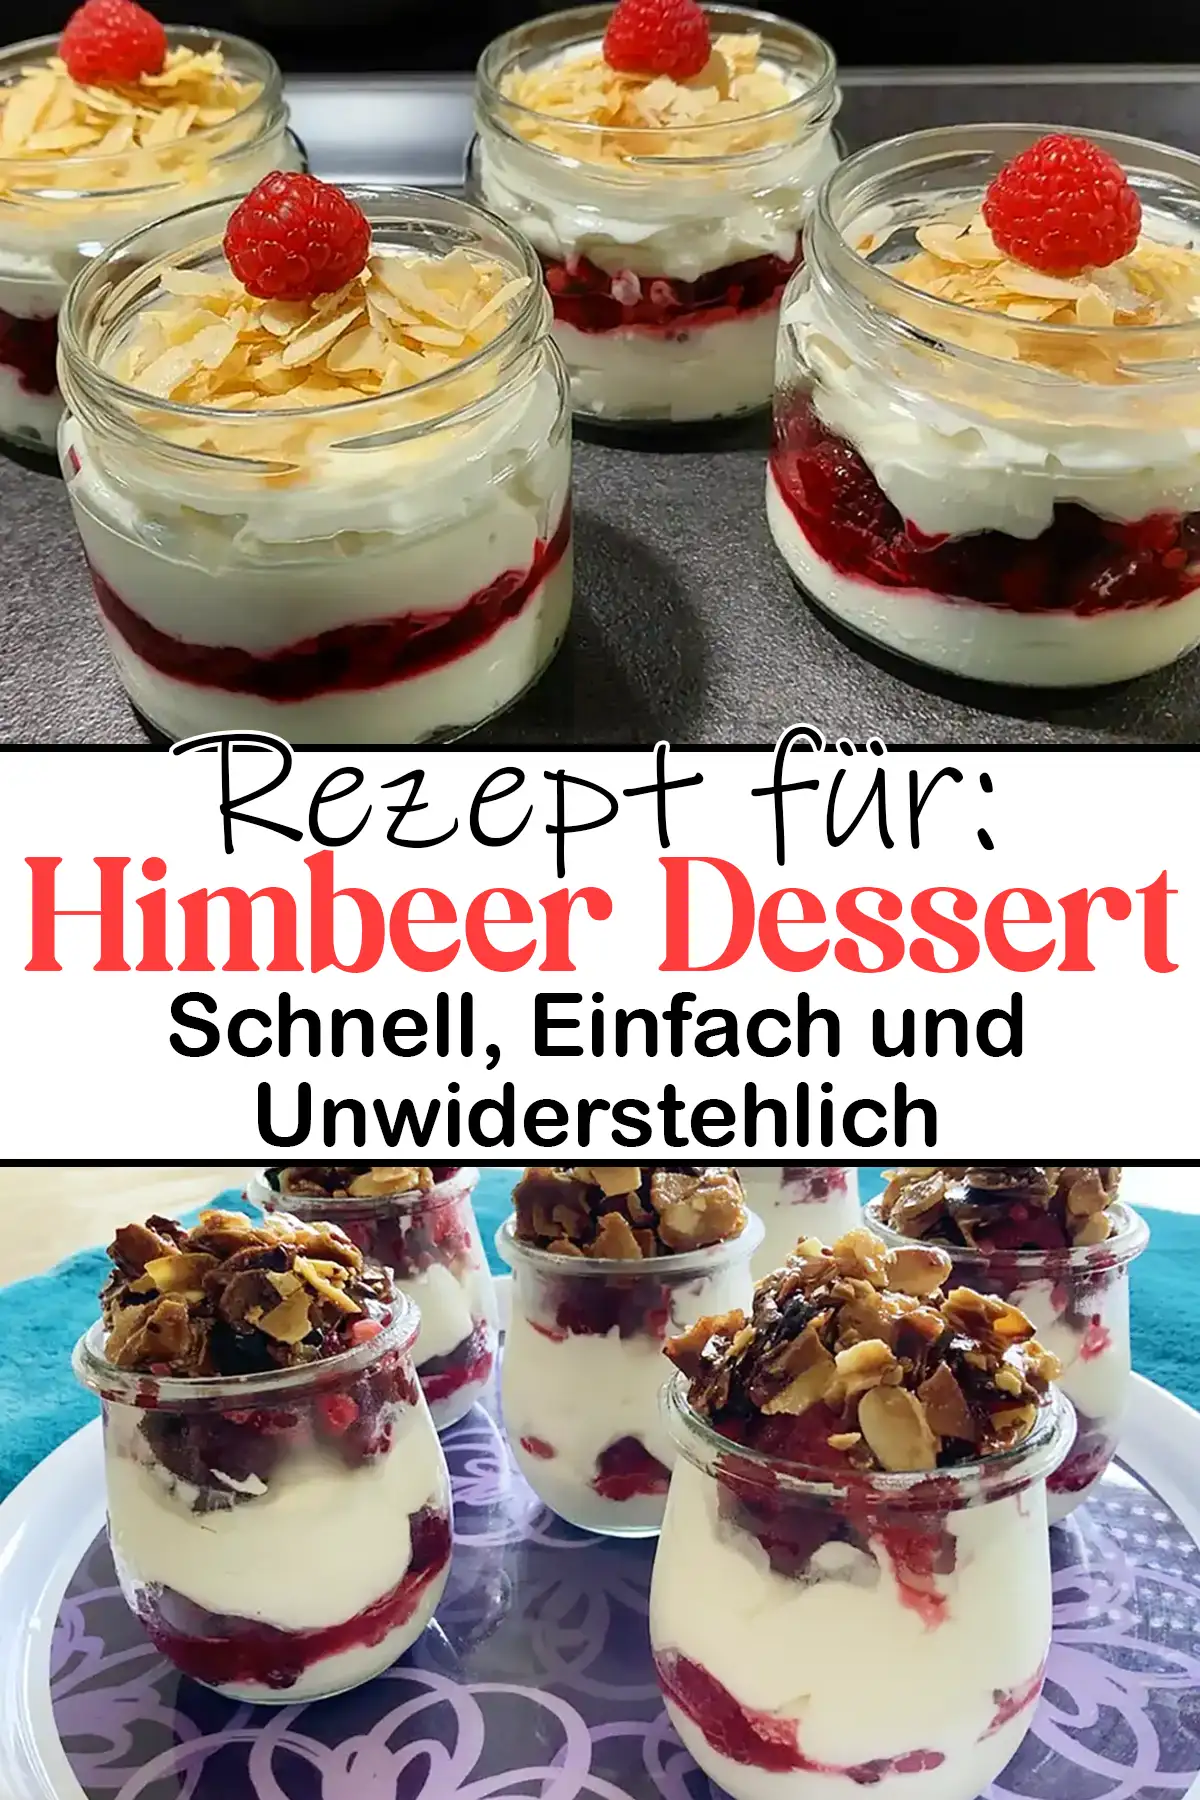 Cremiges Himbeer Dessert: Schnell, Einfach und Unwiderstehlich